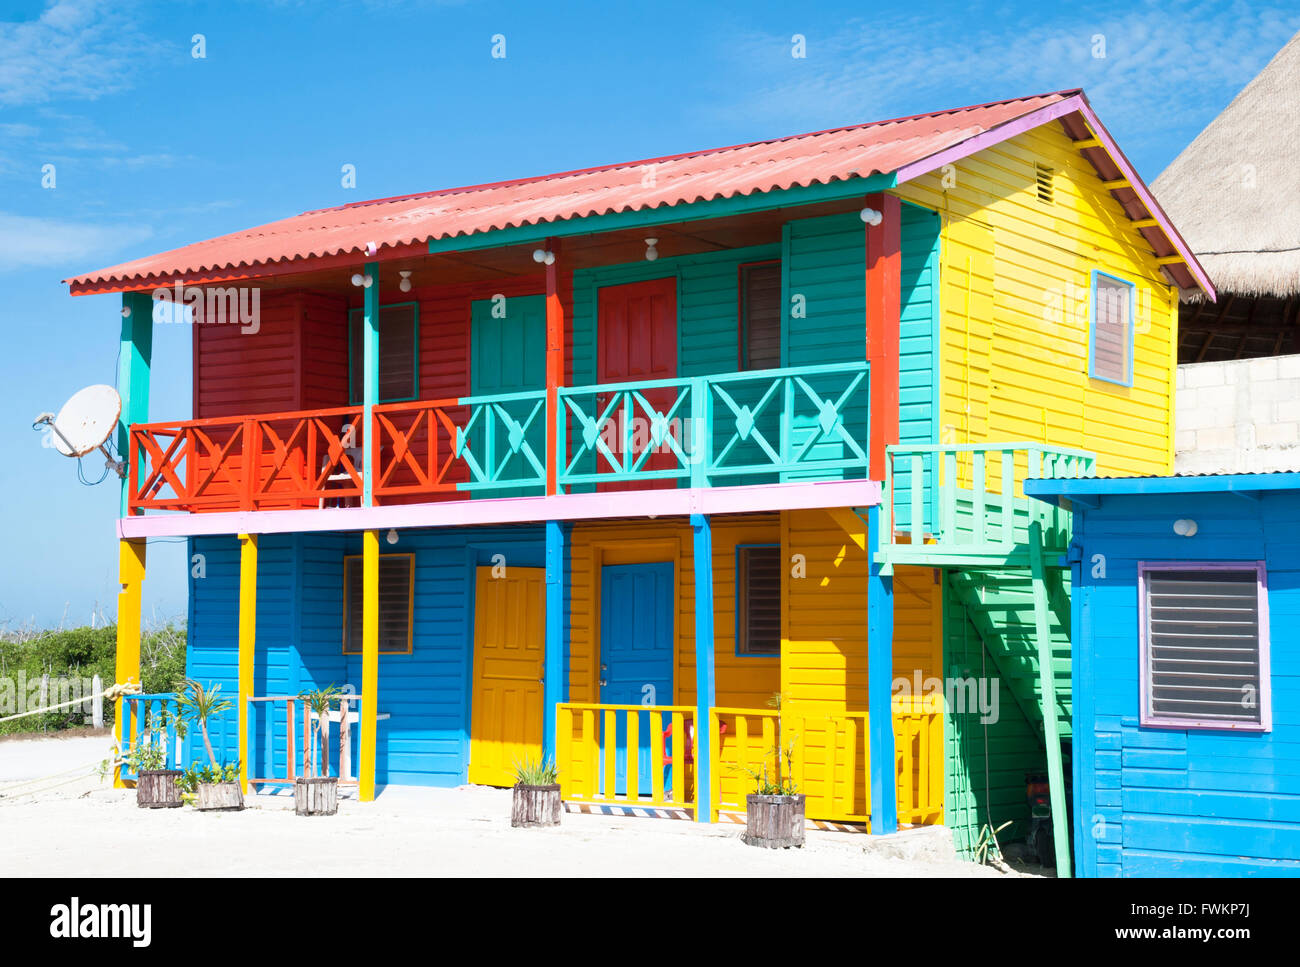 La maison peintes de couleurs vives dans la région de Mexican resort town Mahahual. Banque D'Images